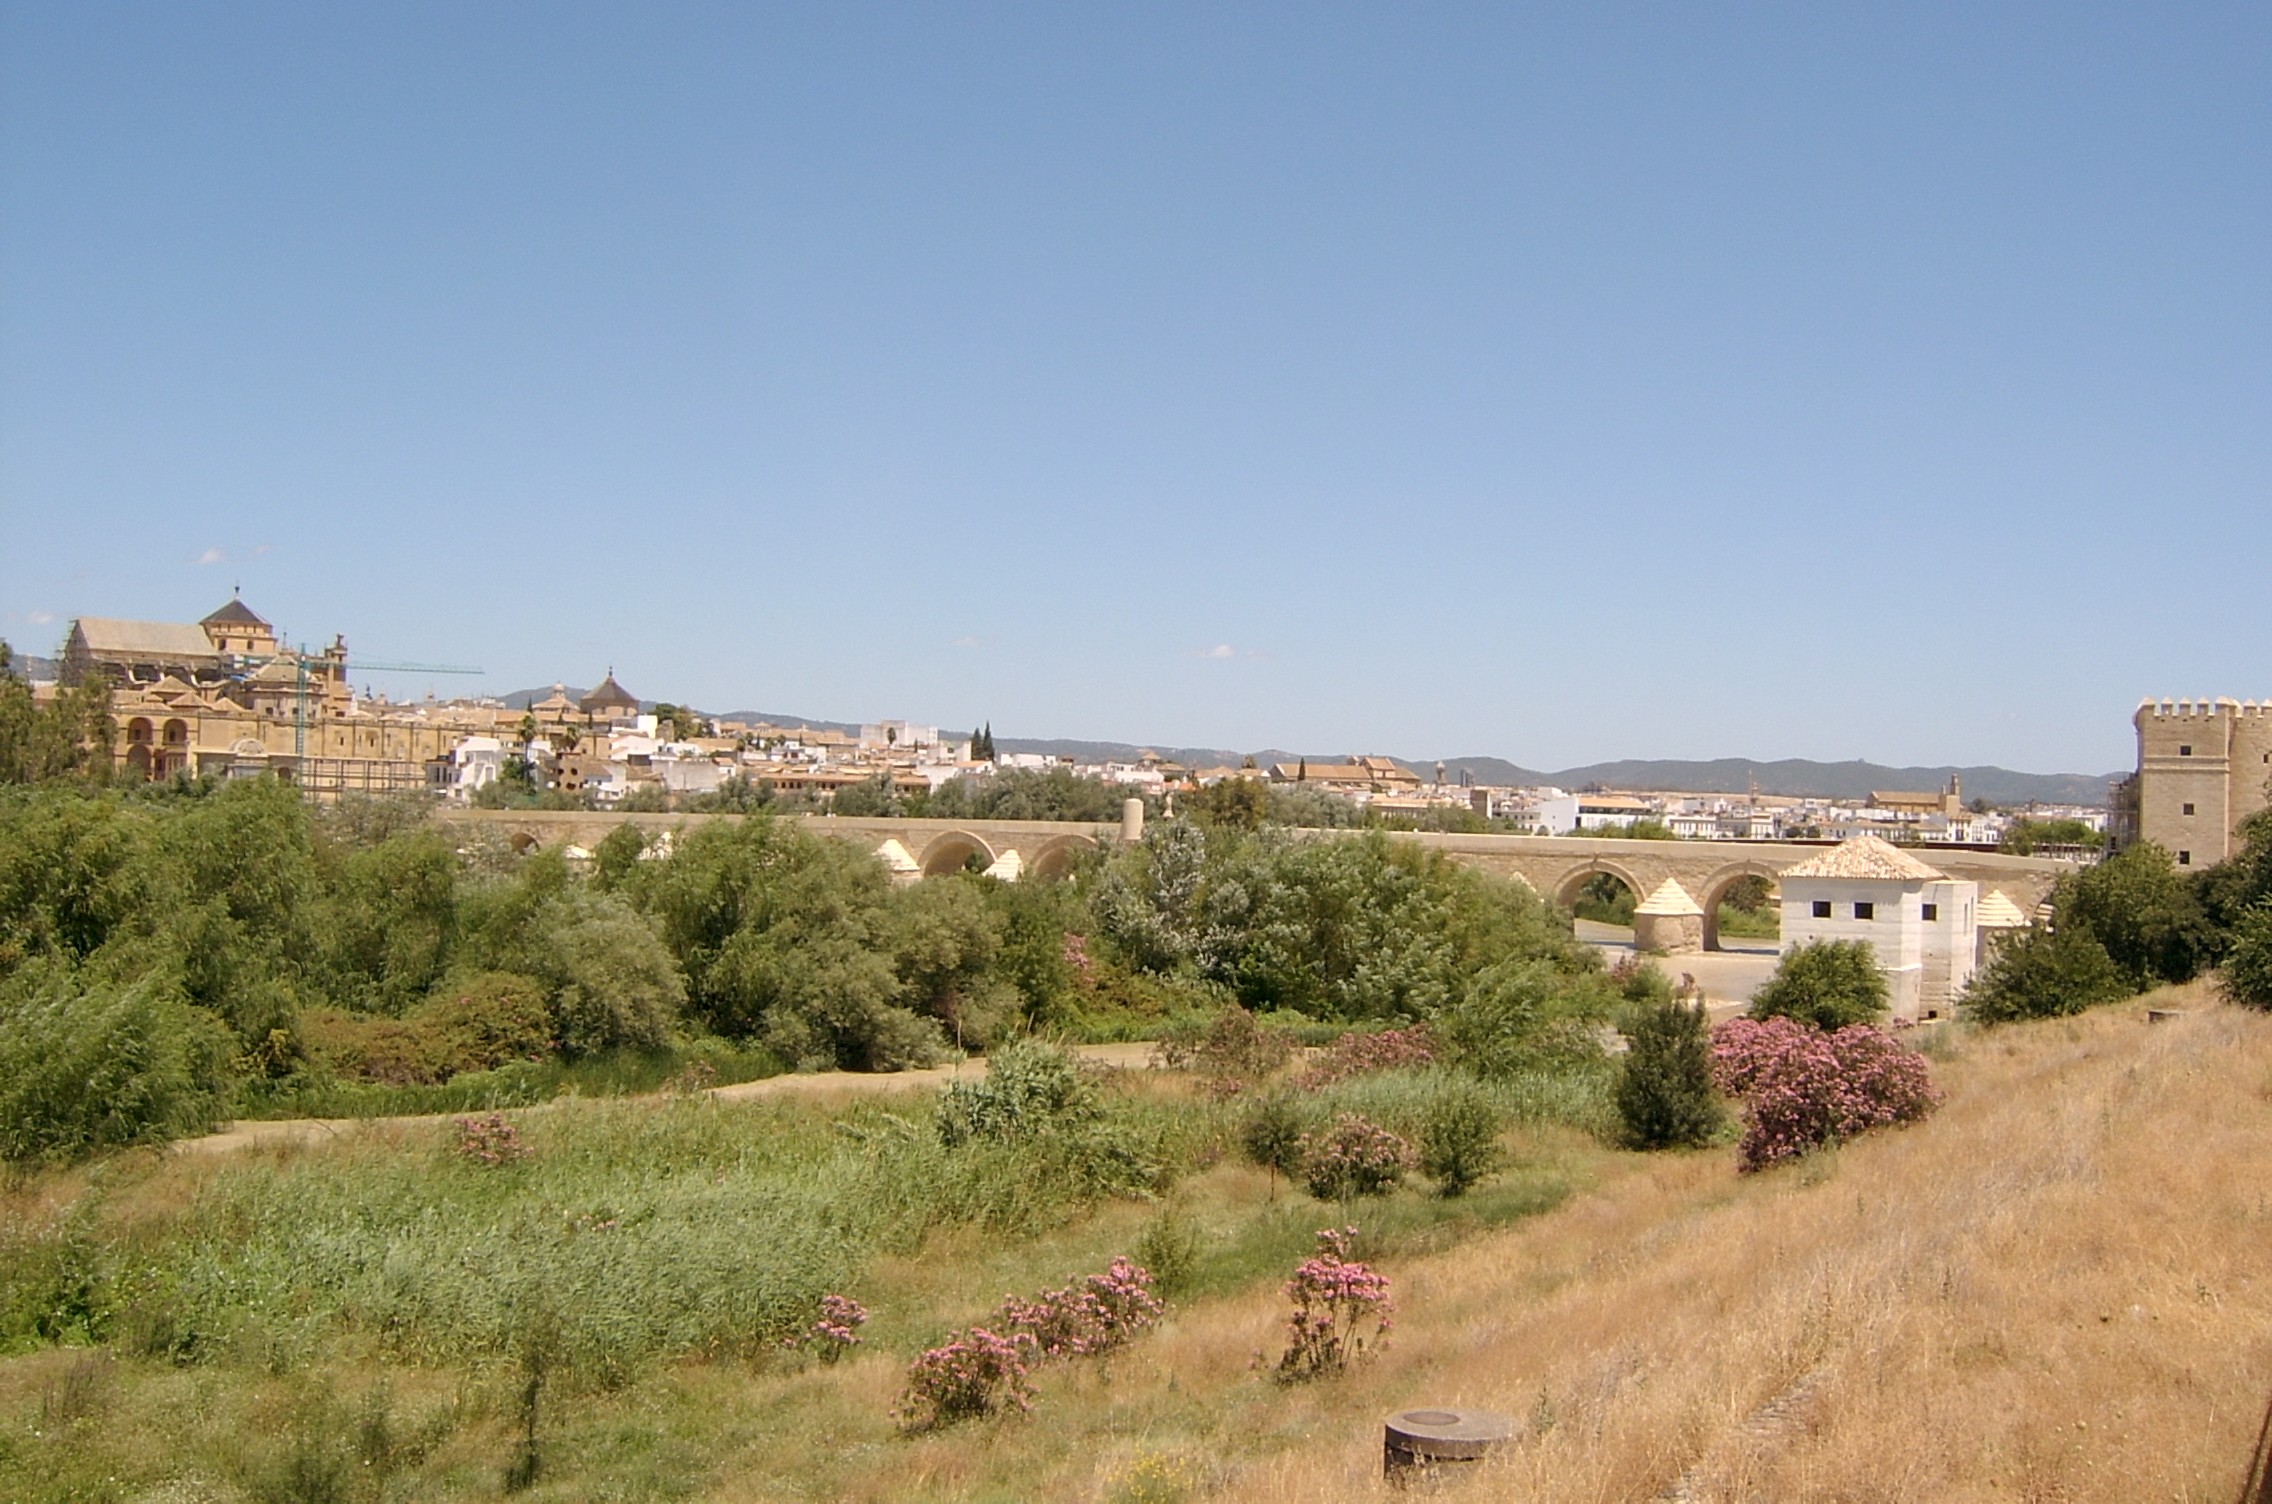 Ampliar imagen: fotografía donde se puede ver hierba algunas flores y árboles en el plano más cercano y al fondo la ciudad de Córdoba